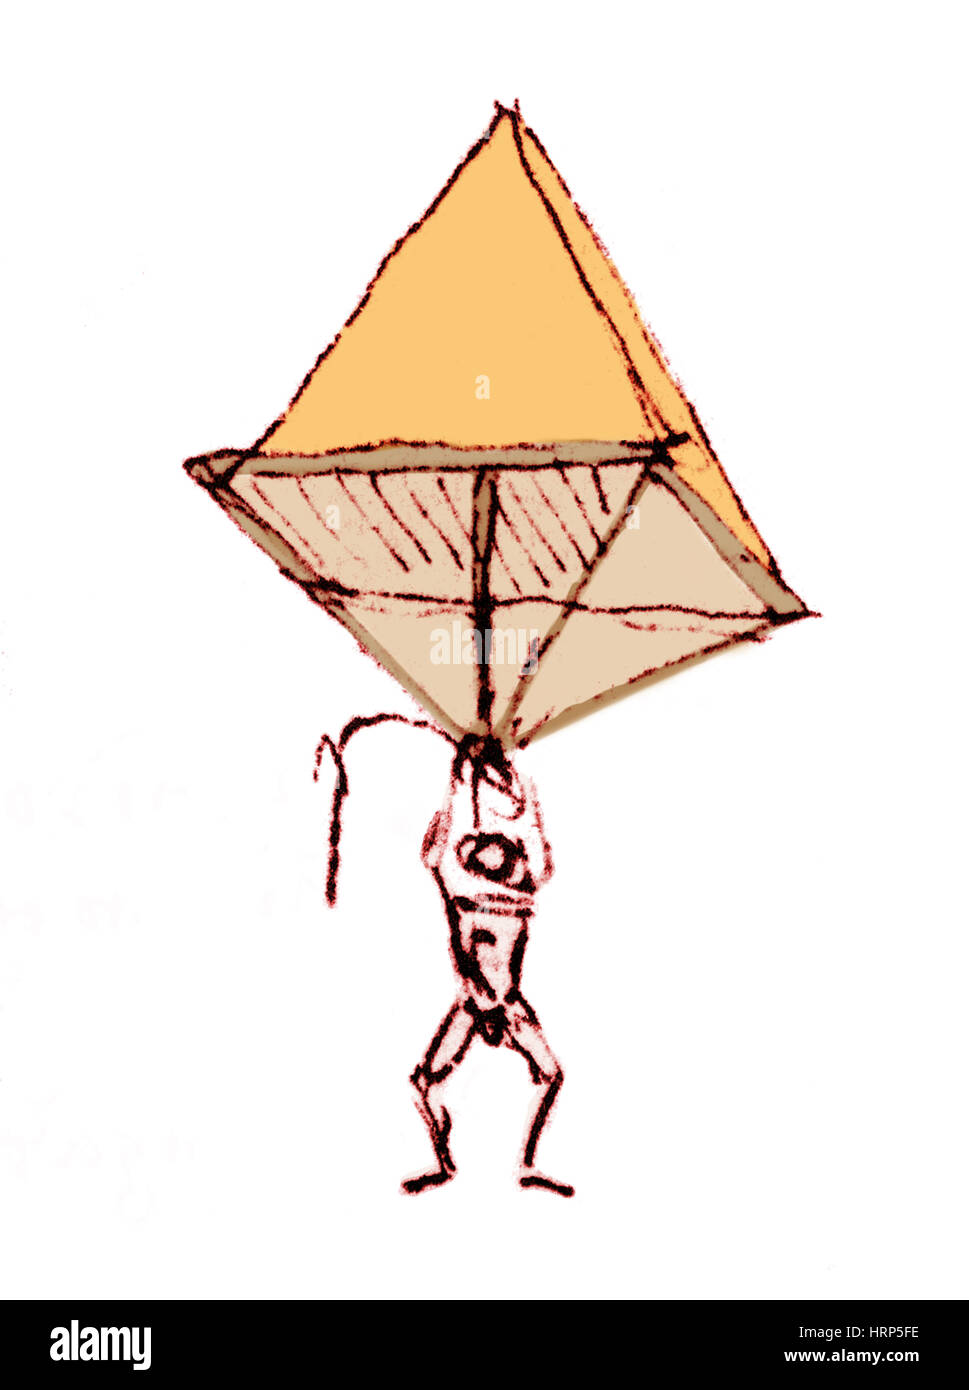 Leonardo da vinci parachute Banque d'images détourées - Alamy